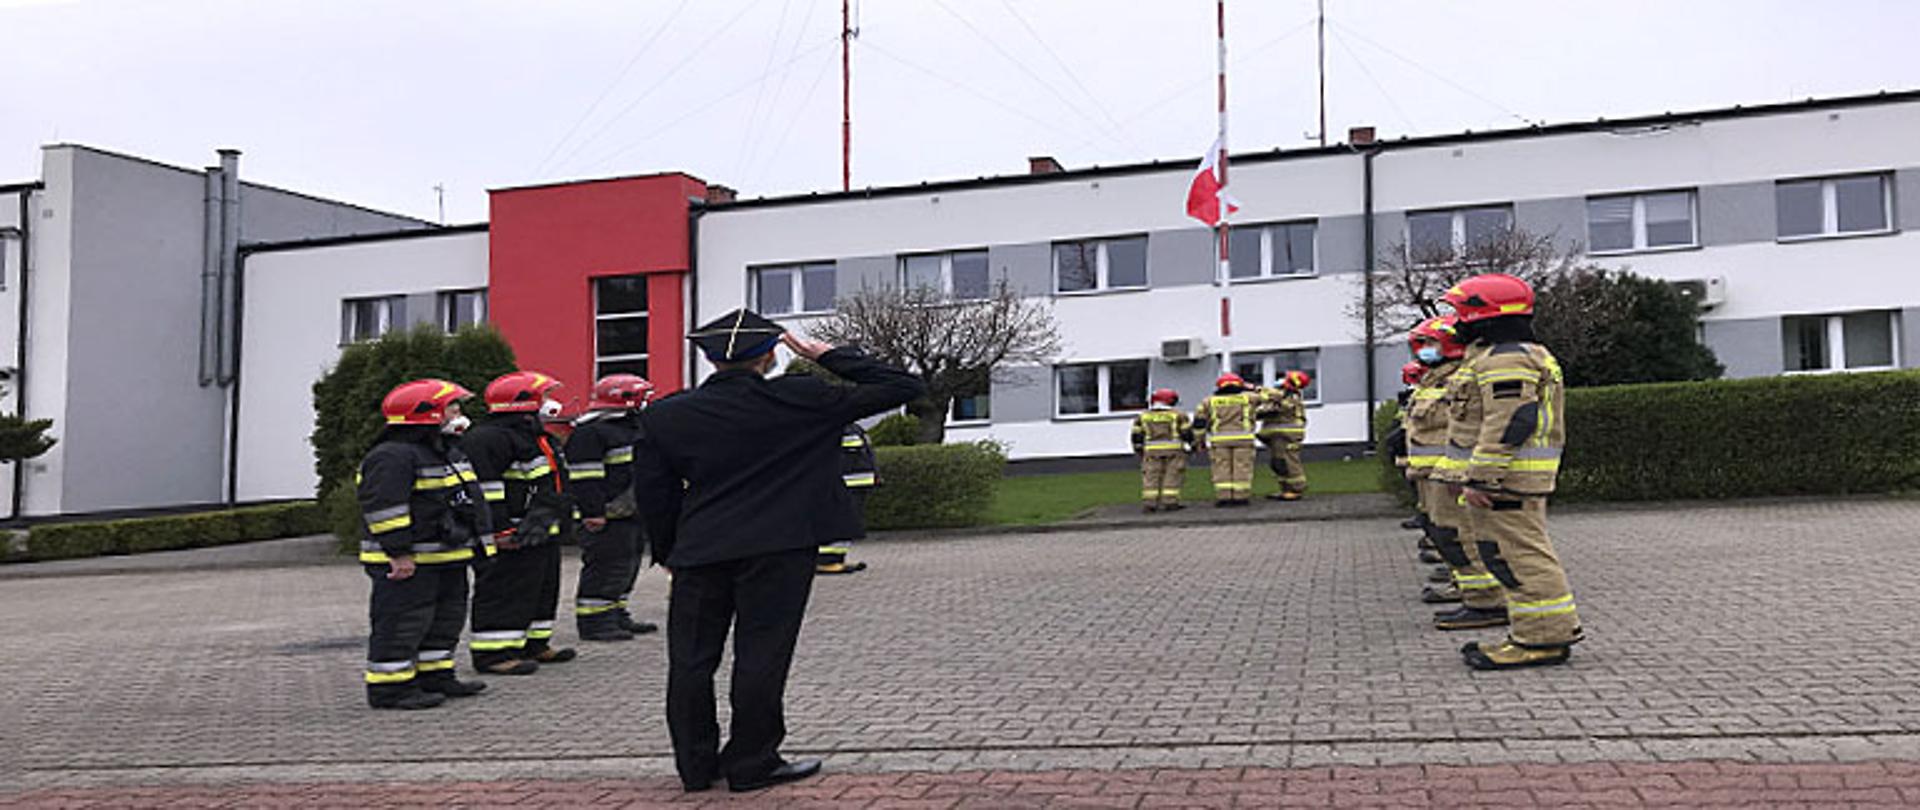 Zdjęcie przedstawia zmianę służbową strażaków podczas podnoszenia flagi państwowej na maszt. Na czele szeregu na pierwszym planie stoi oficer w mundurze wyjściowym z czapką rogatywką i salutuje. Strażacy stoją frontem do siebie w szeregu dziewięciu na lewej stronie i ośmiu po prawej stronie, wszyscy spoglądają na maszt, na który jest wciągana flaga państwowa przez trzech ratowników. Jeden strażak salutuje podnoszonej na maszcie fladze, po jego lewej stronie strażak stoi w pozycji zasadniczej, po prawo ratownik wciąga flagę, flaga znajduje się w połowie długości masztu. Wszyscy strażacy są ubrani w ubrania bojowe typu Moratex, na głowie maja heł, na twarzy maseczki ochronne, na nogach kalosze. Ratownicy po lewo ubrani są w ubrania barwy czarnej z odblaskowymi pasami barwy szarej i żółtej a ratownicy po prawej stronie kadru w ubrania barwy jasno brązowej z odblaskowymi pasami barwy szarej i żółtej. W tle żywopłot oraz budynek Komendy Powiatowej w Łowiczu oraz okna należące do części administracyjnej komendy.